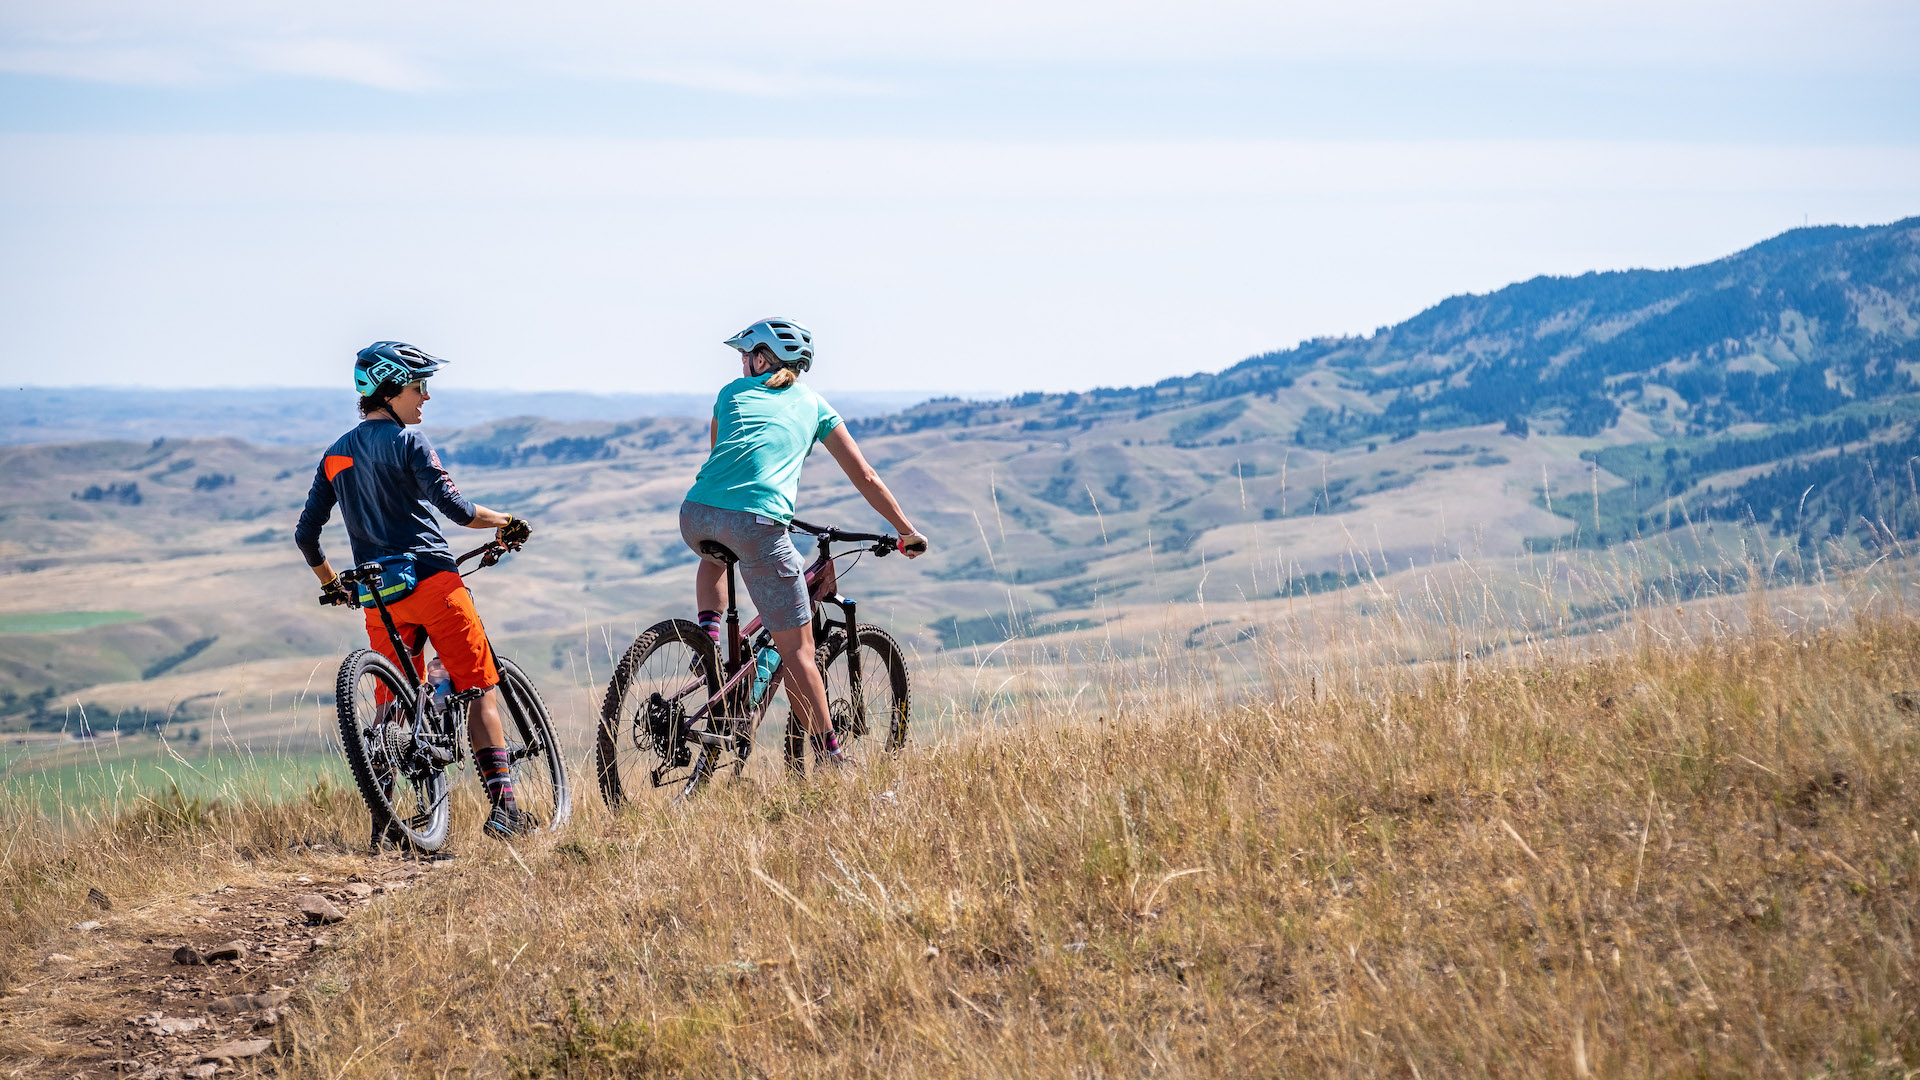 Two women riding mountain bikes through grassy foothills.